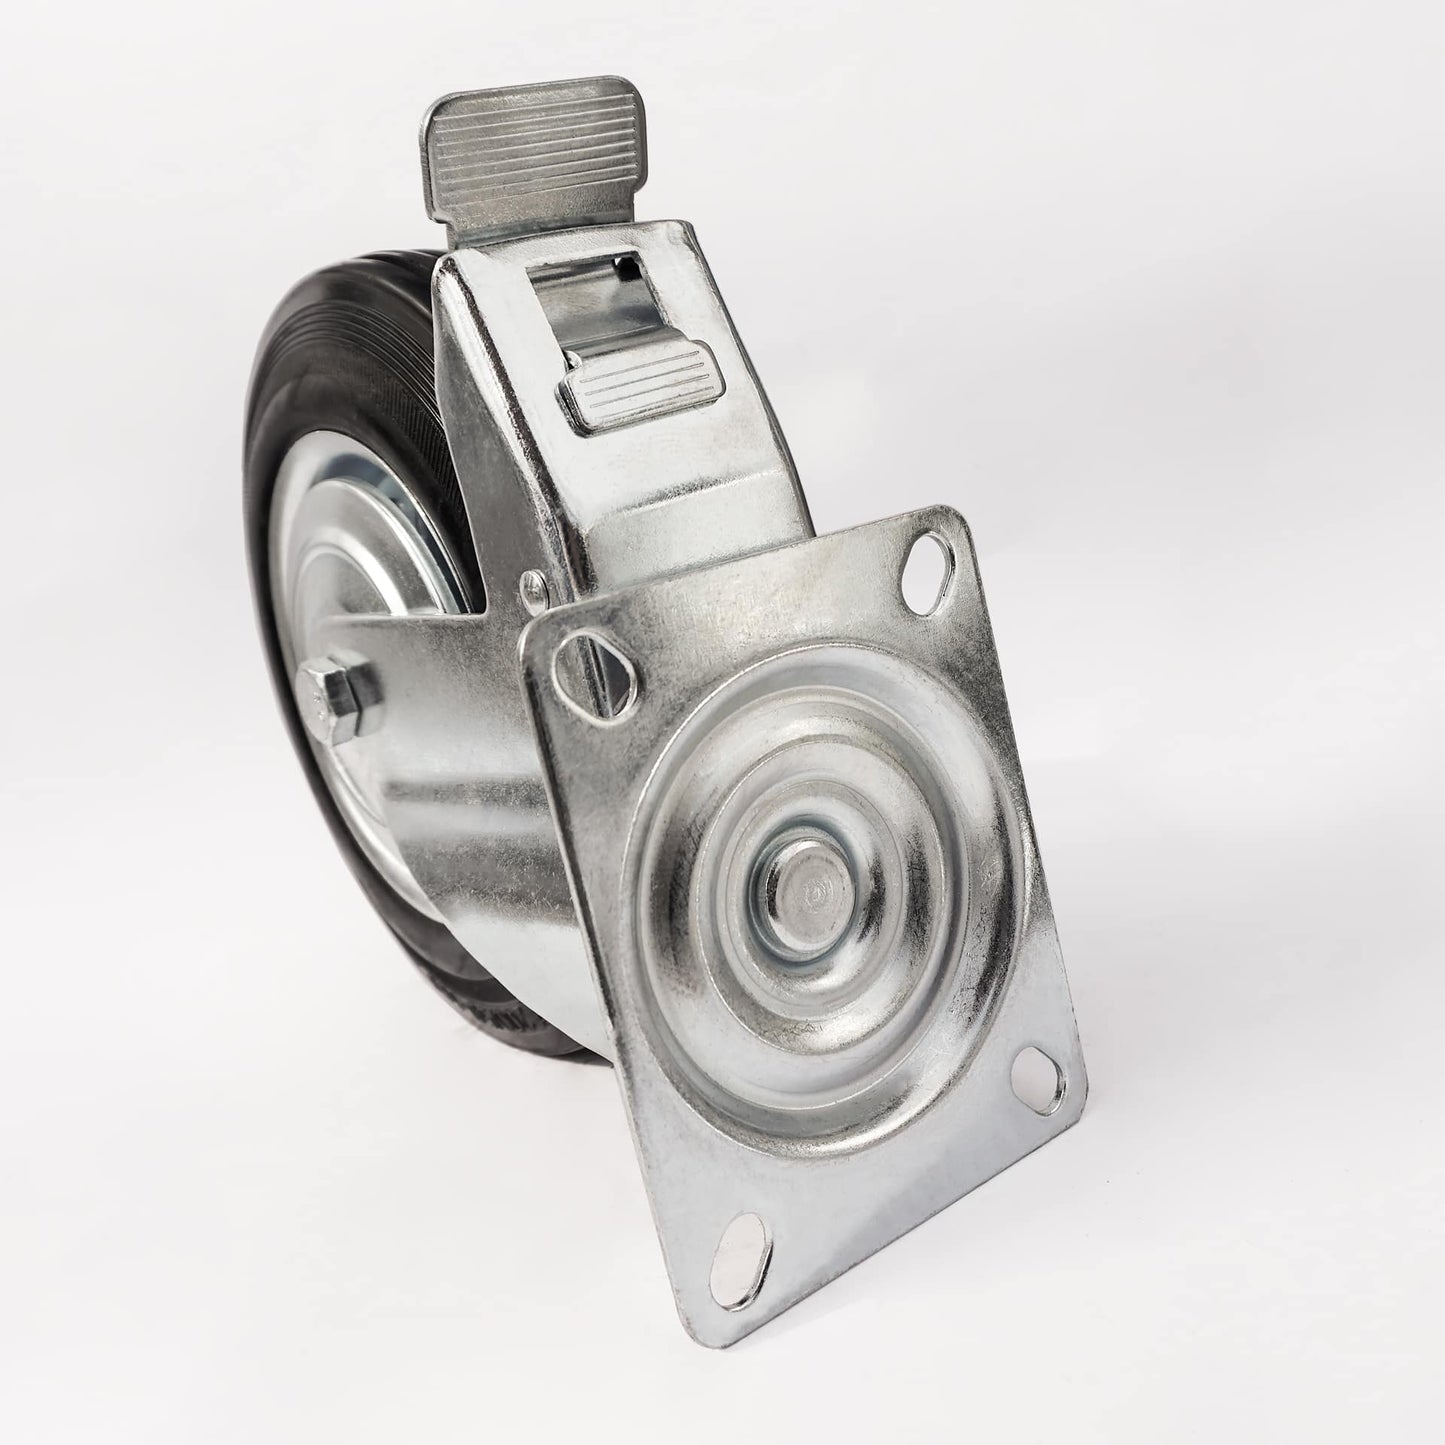 Ø 100 mm | Zestaw kołowy obrotowy z hamulcem: metal guma, płyta mocująca, łożysko wałeczkowe, nośność 50 kg | 4003-100 - płyta mocująca